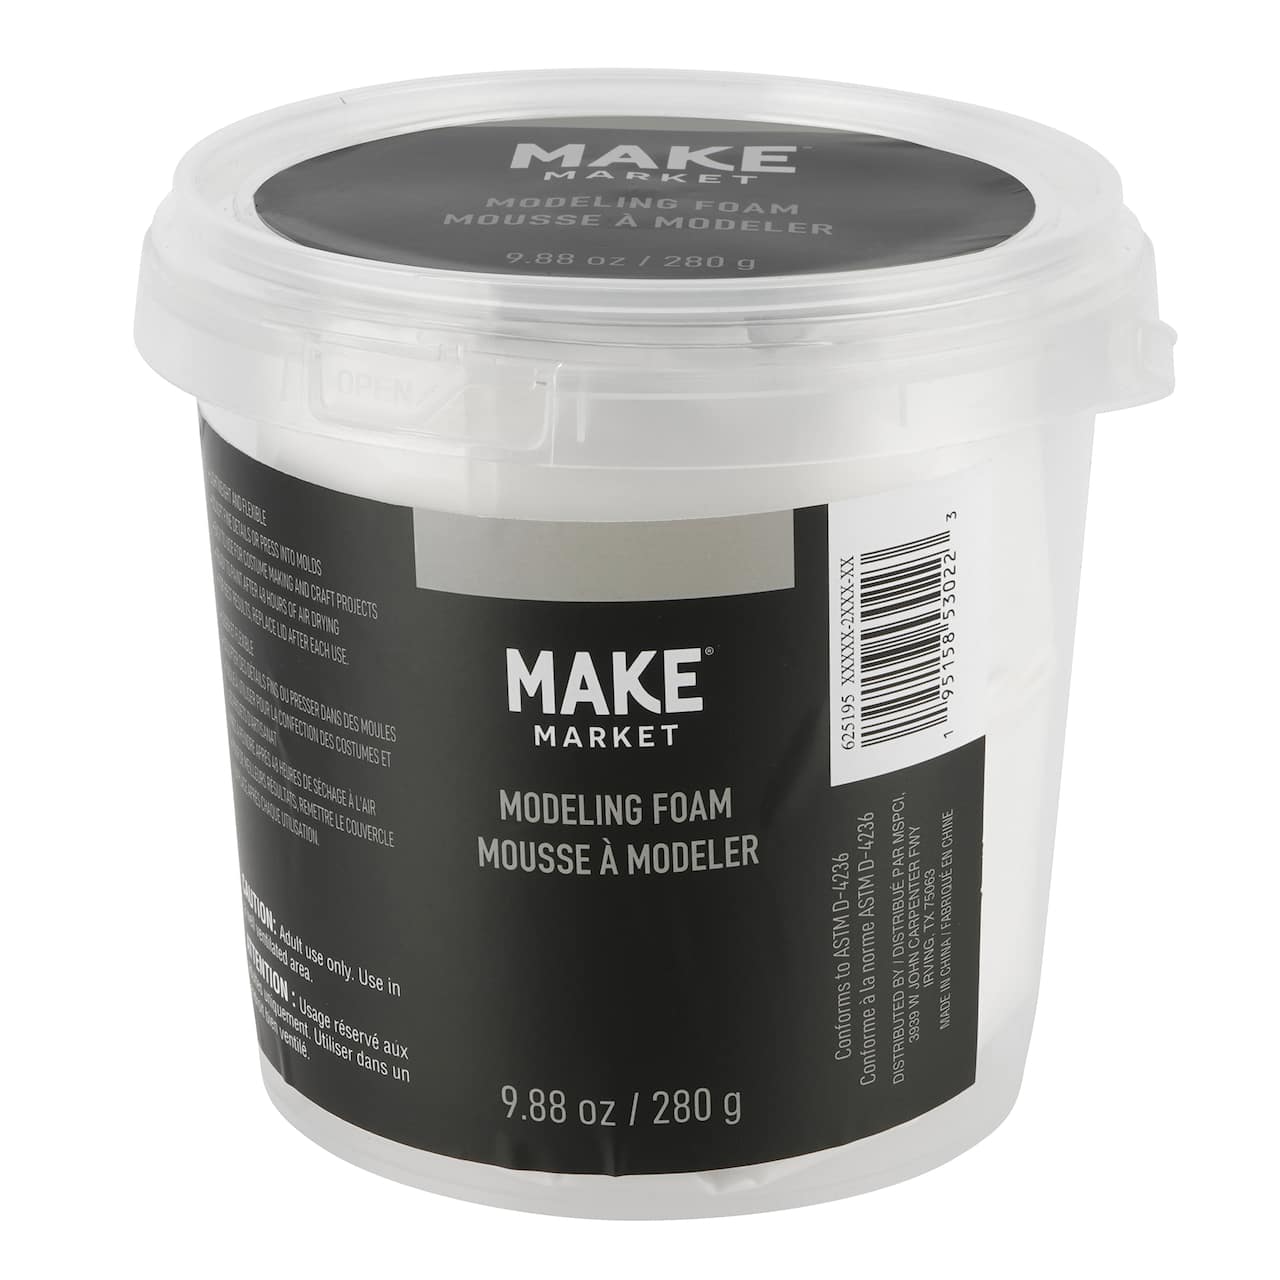 Modeling Foam by Make Market&#xAE;